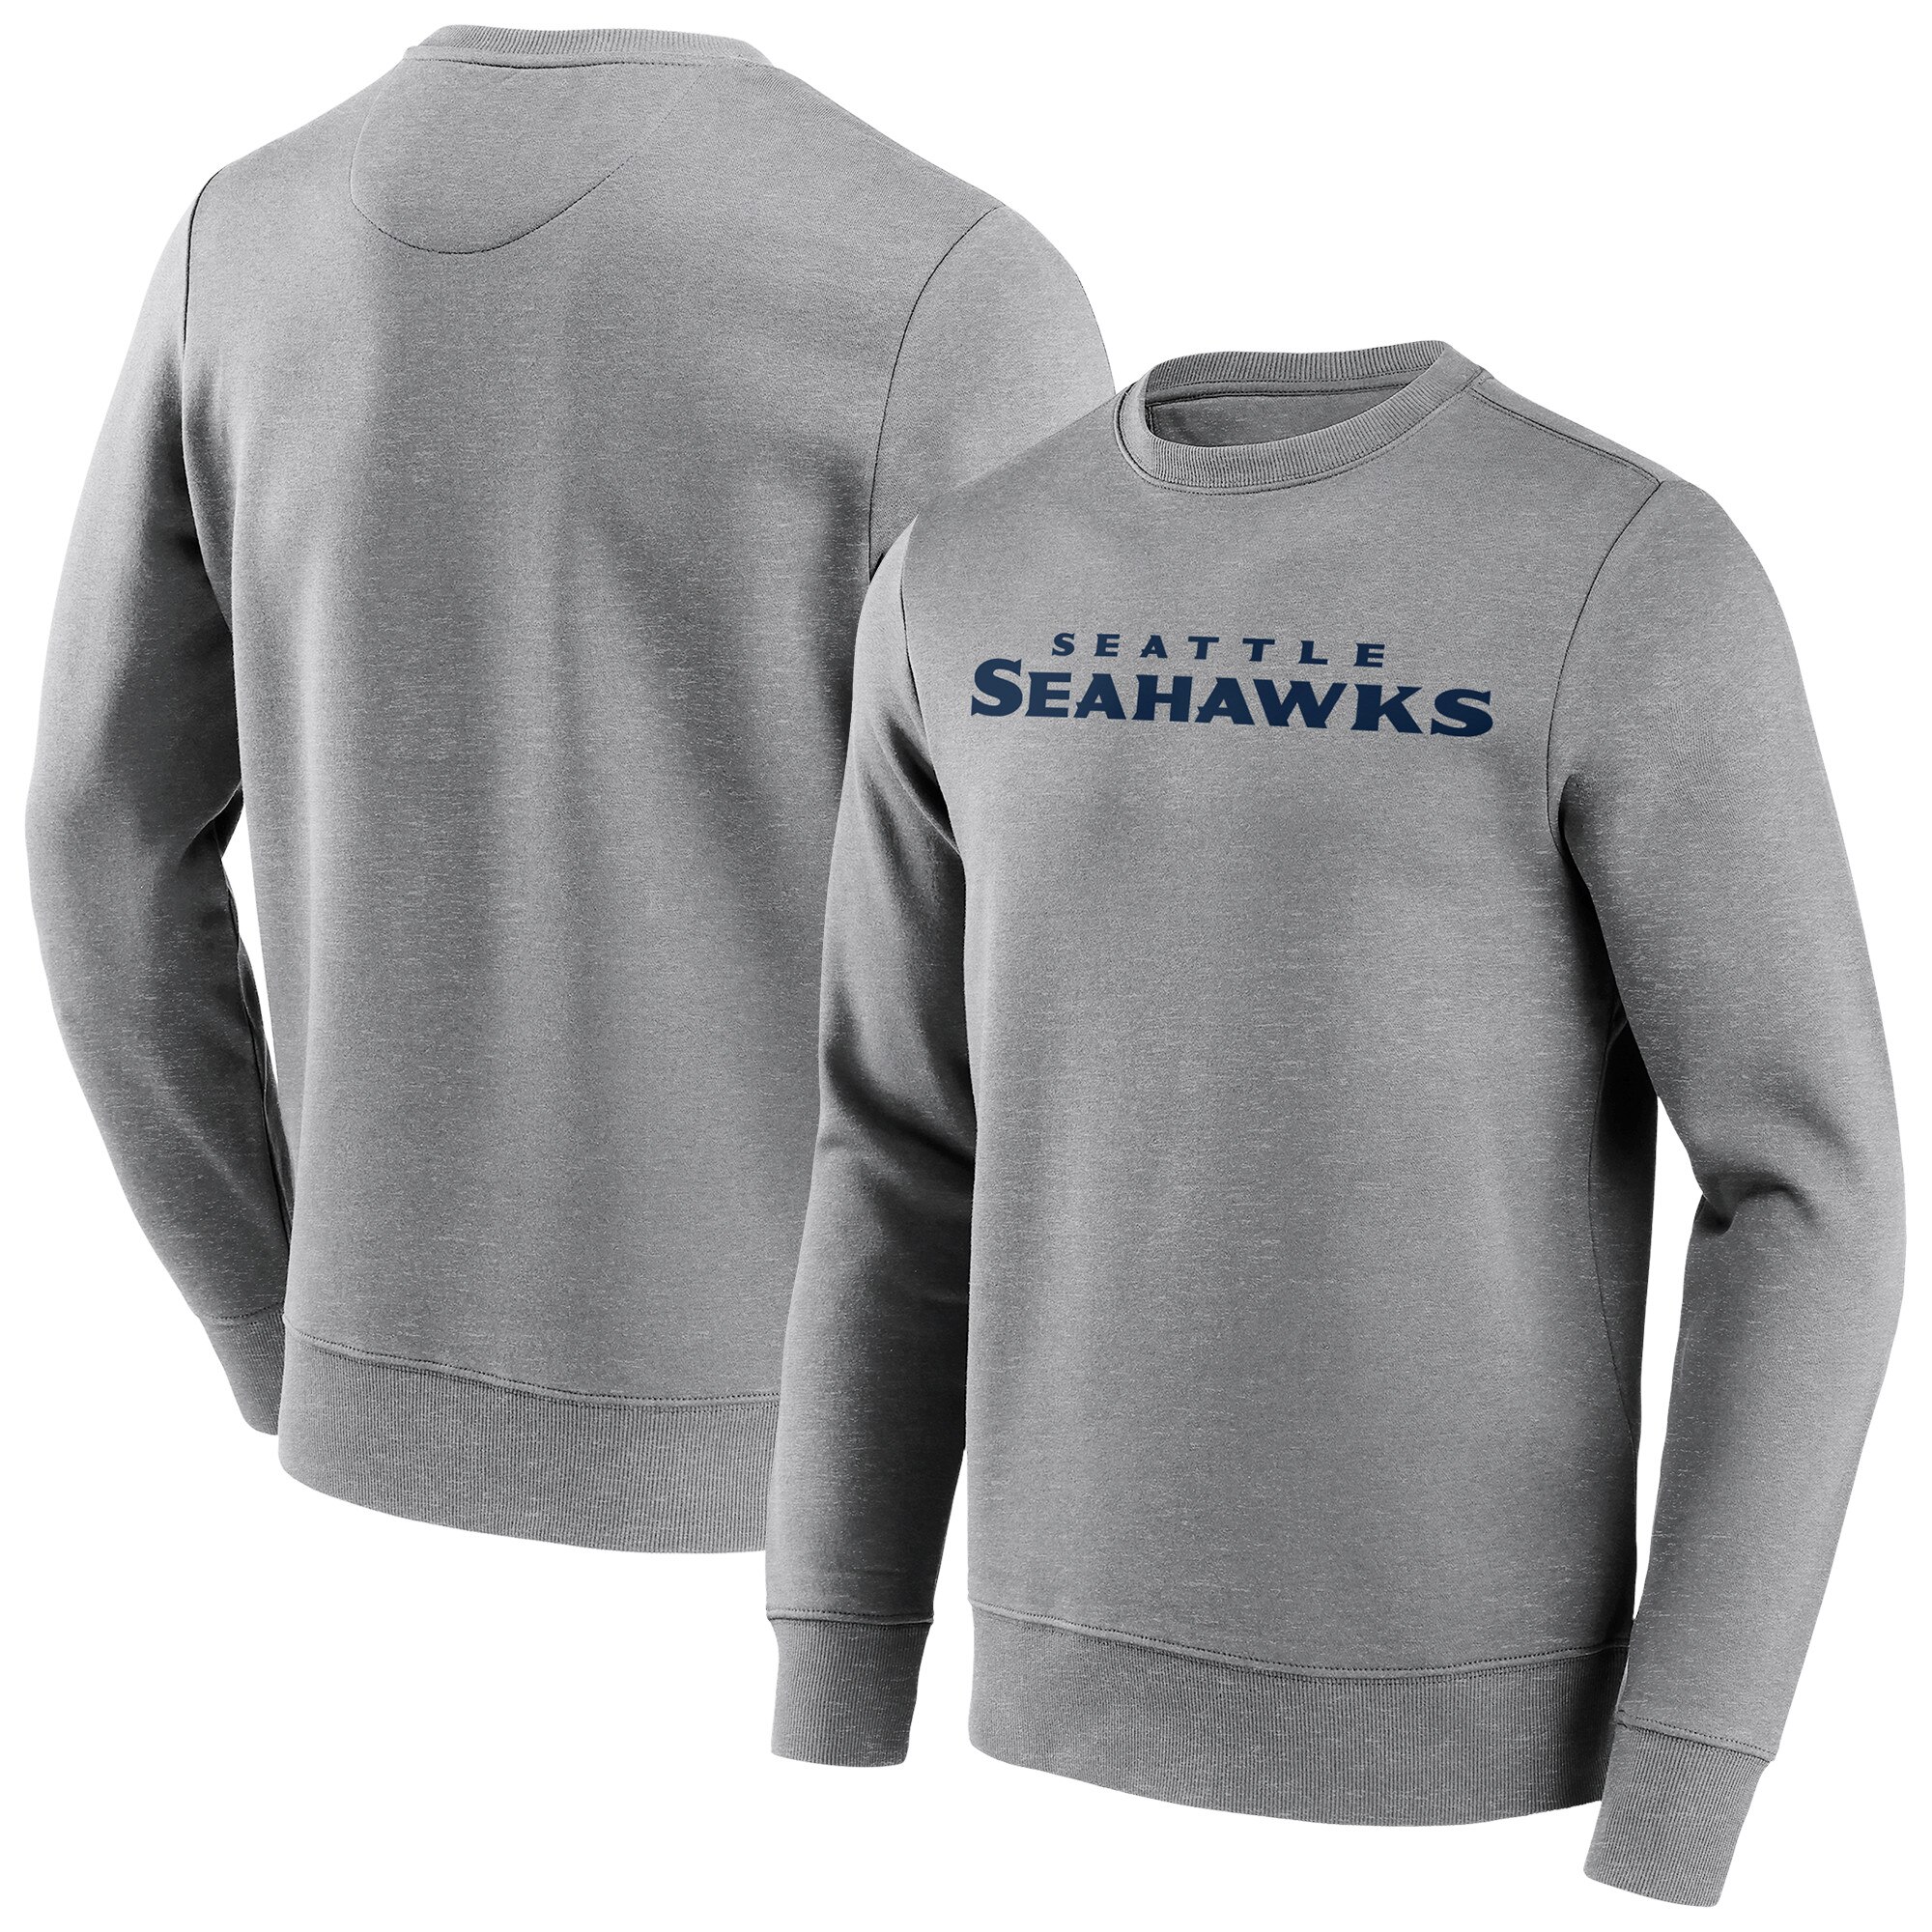 Seattle Seahawks Rundhals-Sweatshirt mit neutraler Farbe und Wortmarke – Herren